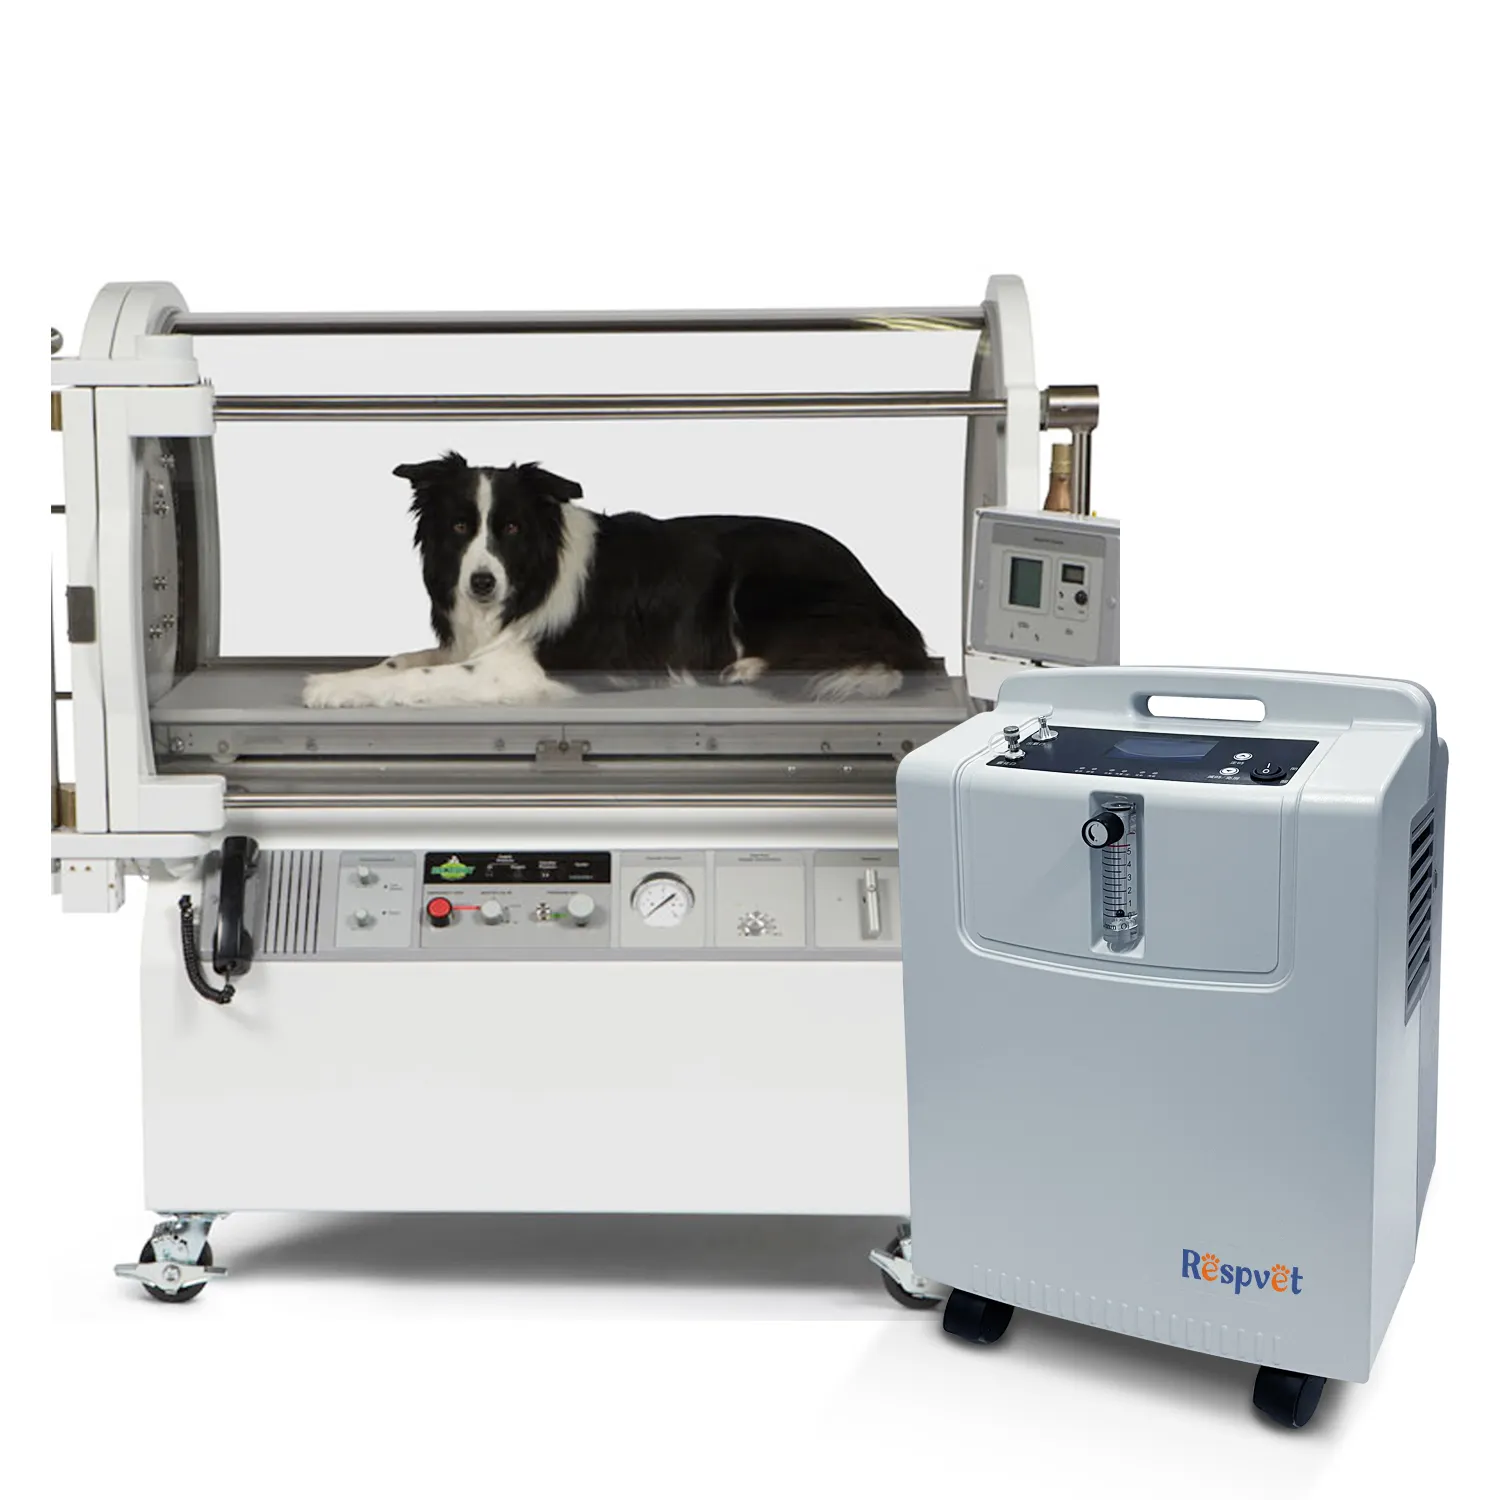 El eficiente concentrador de oxígeno animal de 5L, la experiencia de respiración cómoda para mascotas pequeñas, se puede equipar con una máquina de anestesia